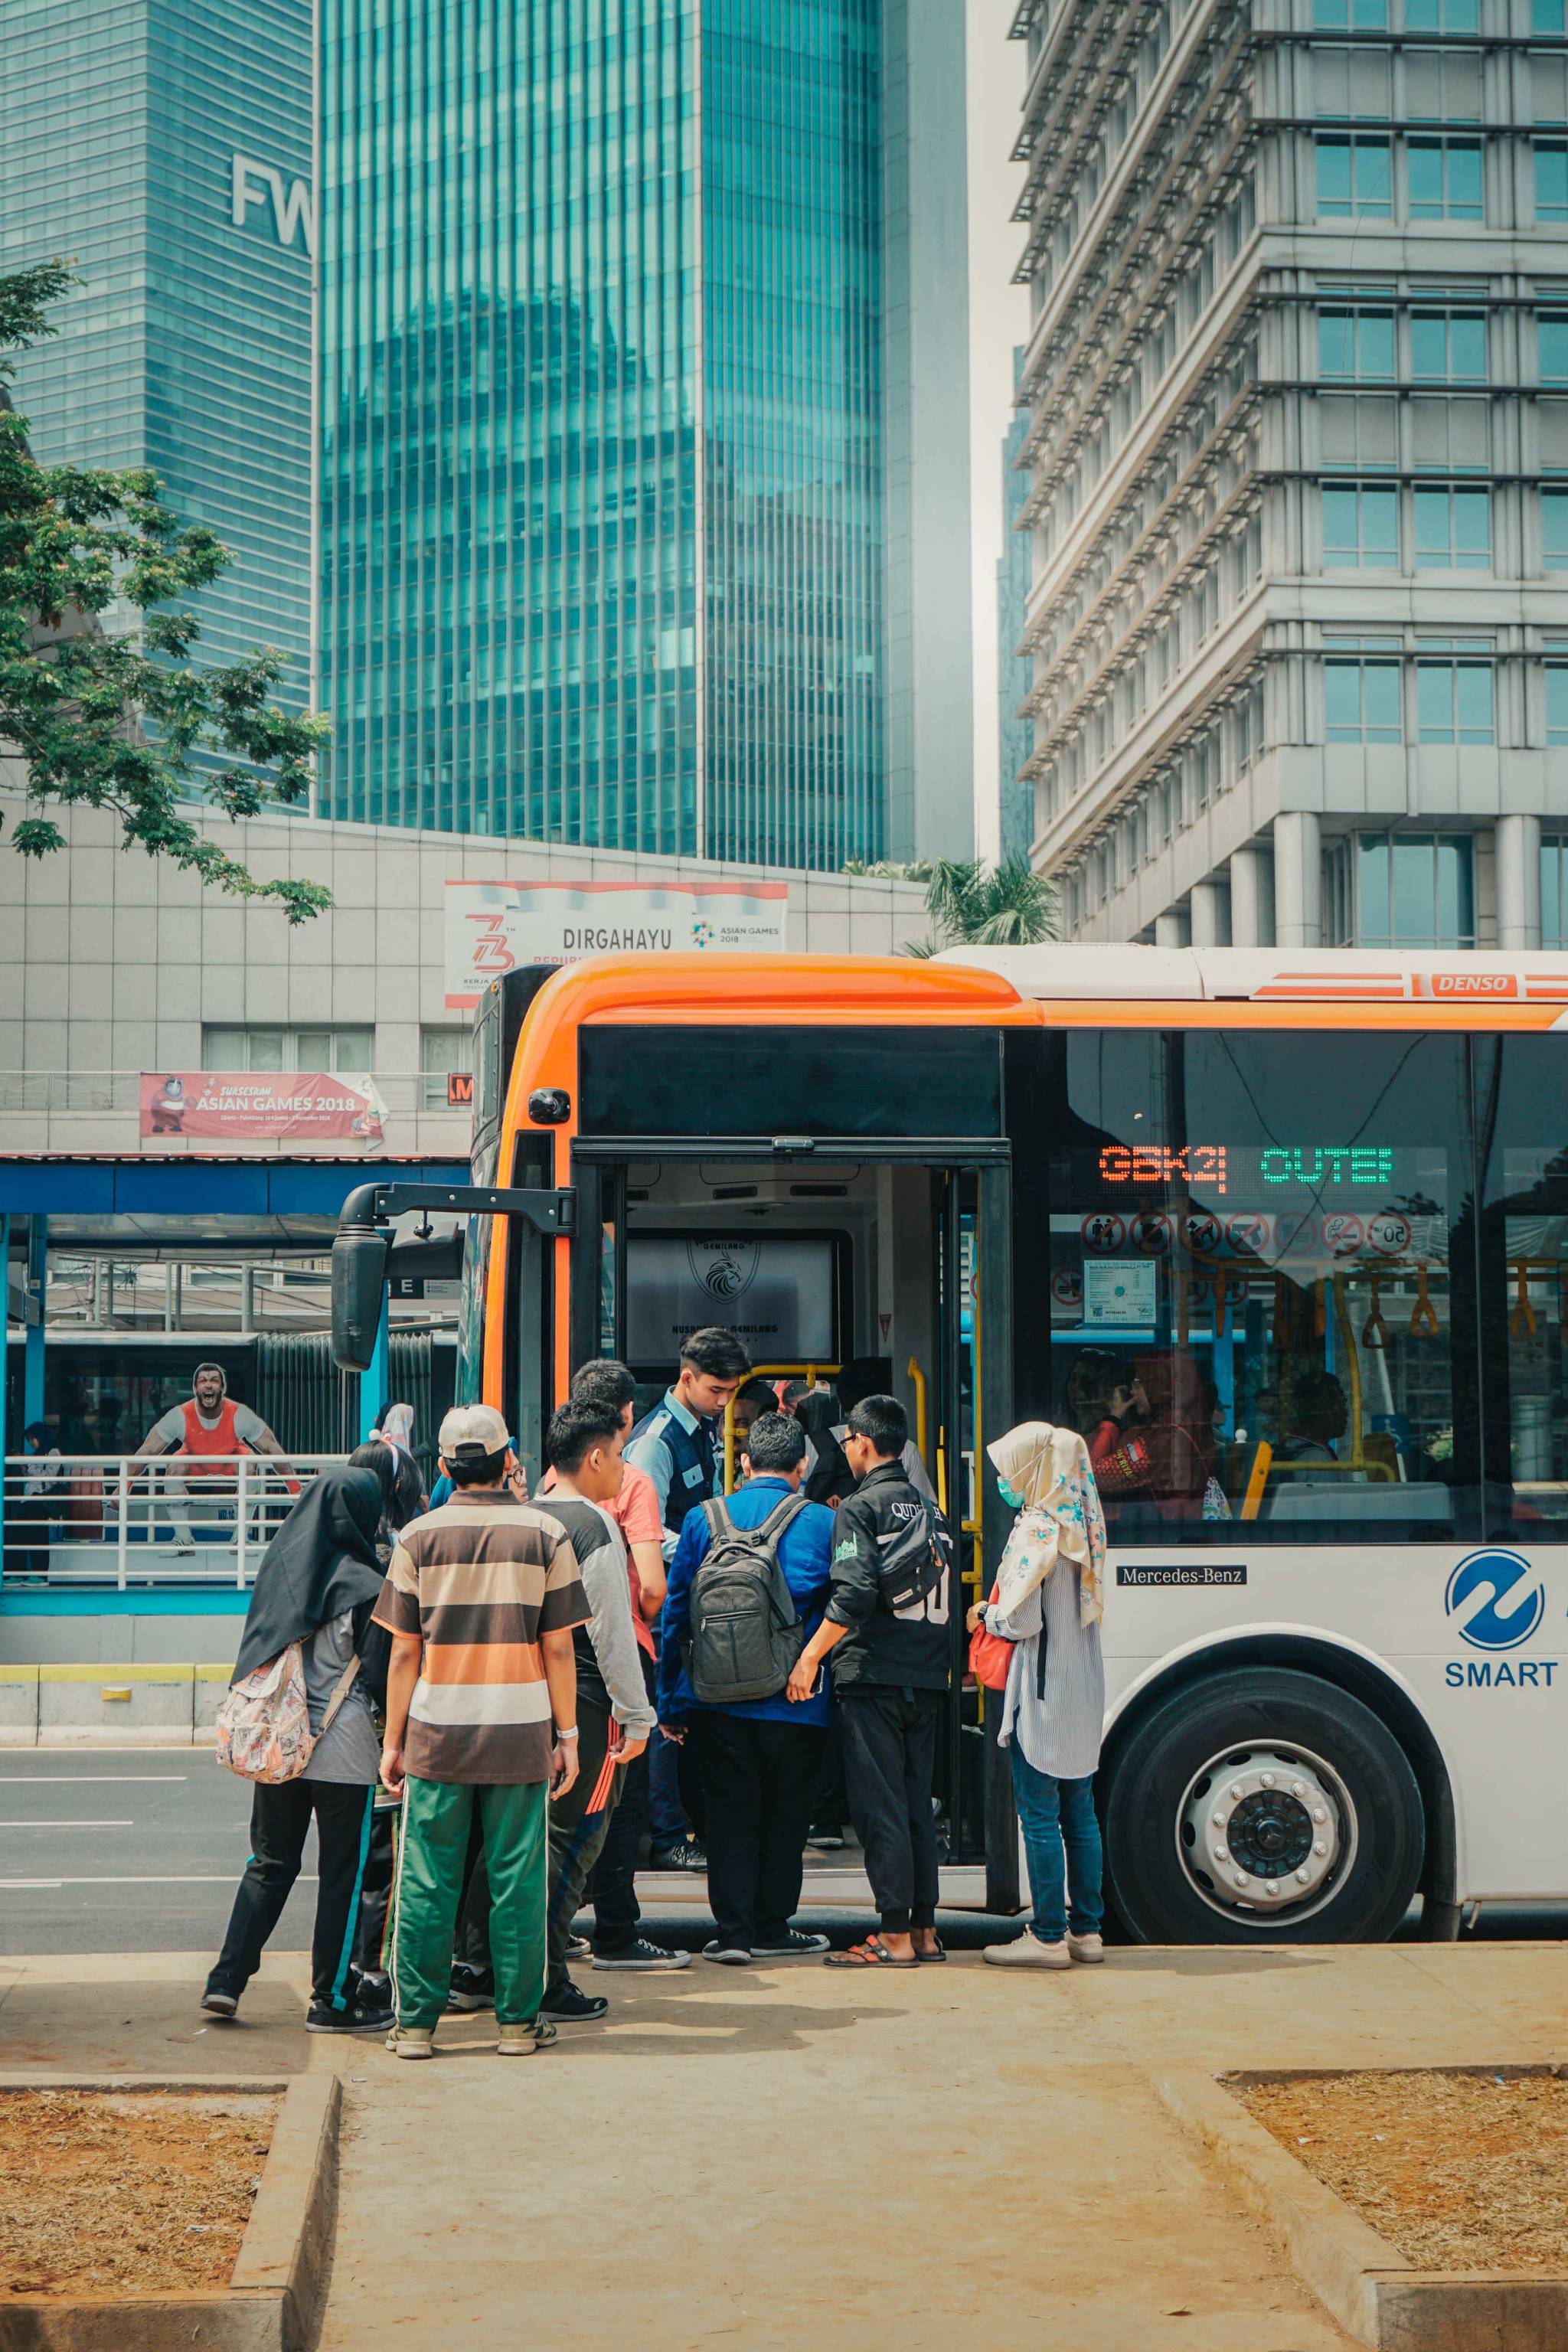 Dubai locals get involved in public transport redesign